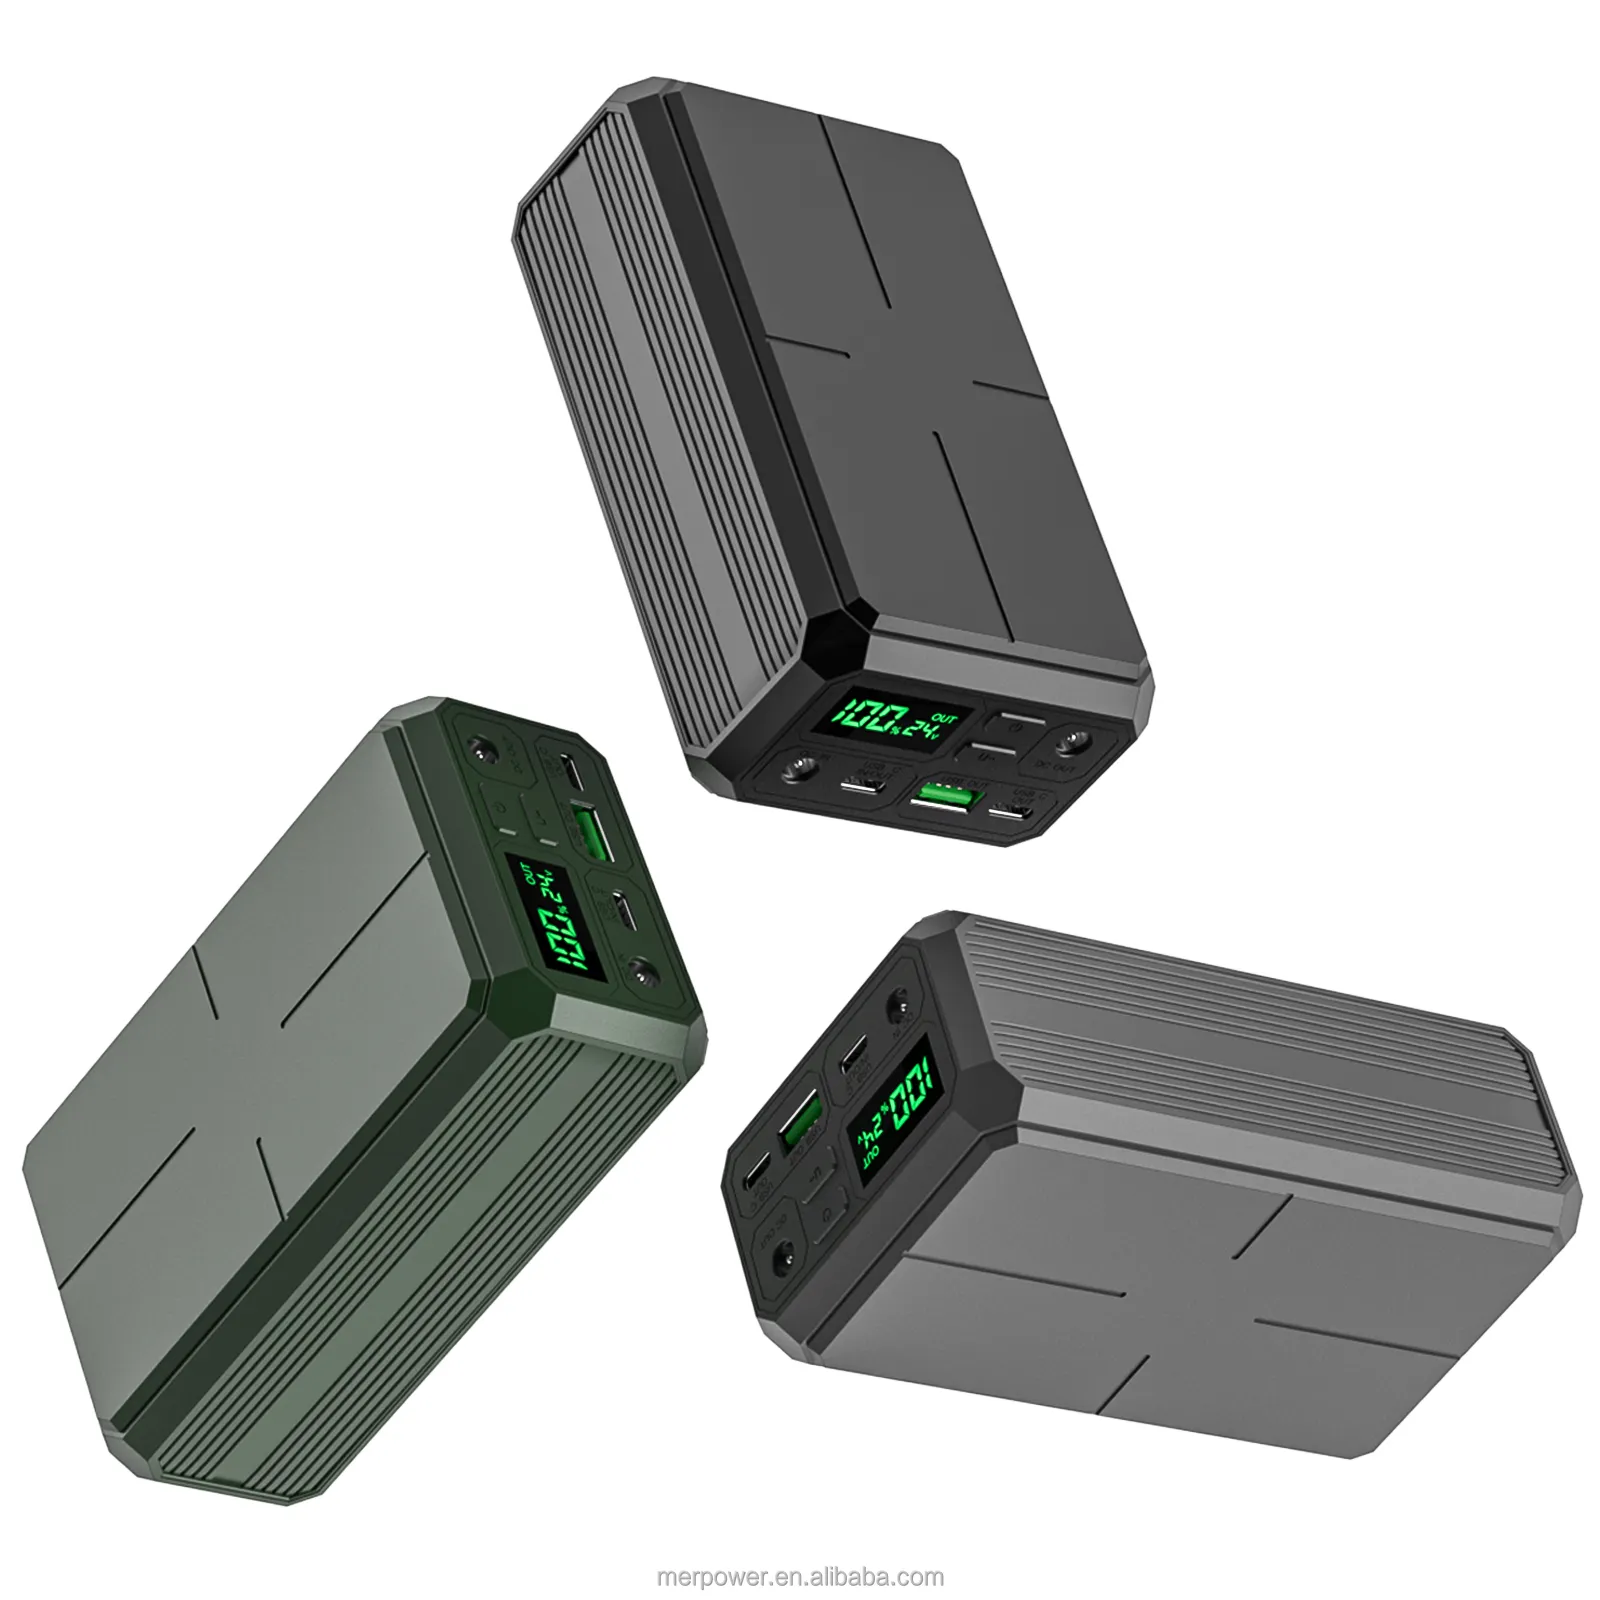 नई 100w प्रकार सी बैटरी 30000mah pd पावर बैंक अद्वितीय कैपप पोर्टेबल चार्जर, डीसी आउटपुट इंटरफ़ेस के साथ आउटडोर के लिए